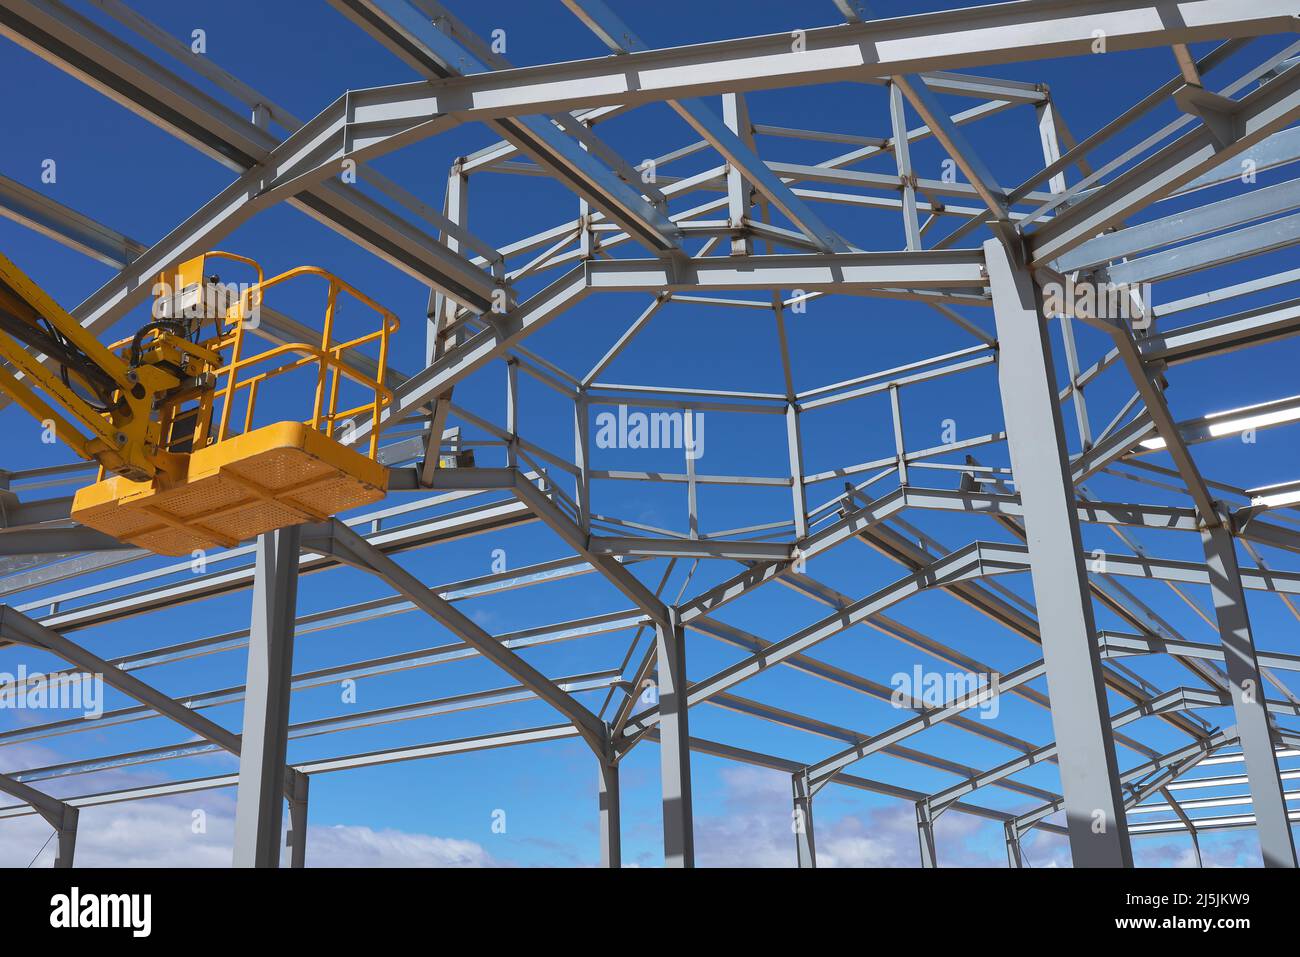 détail d'une plate-forme élévatrice jaune pour la construction d'une structure métallique Banque D'Images